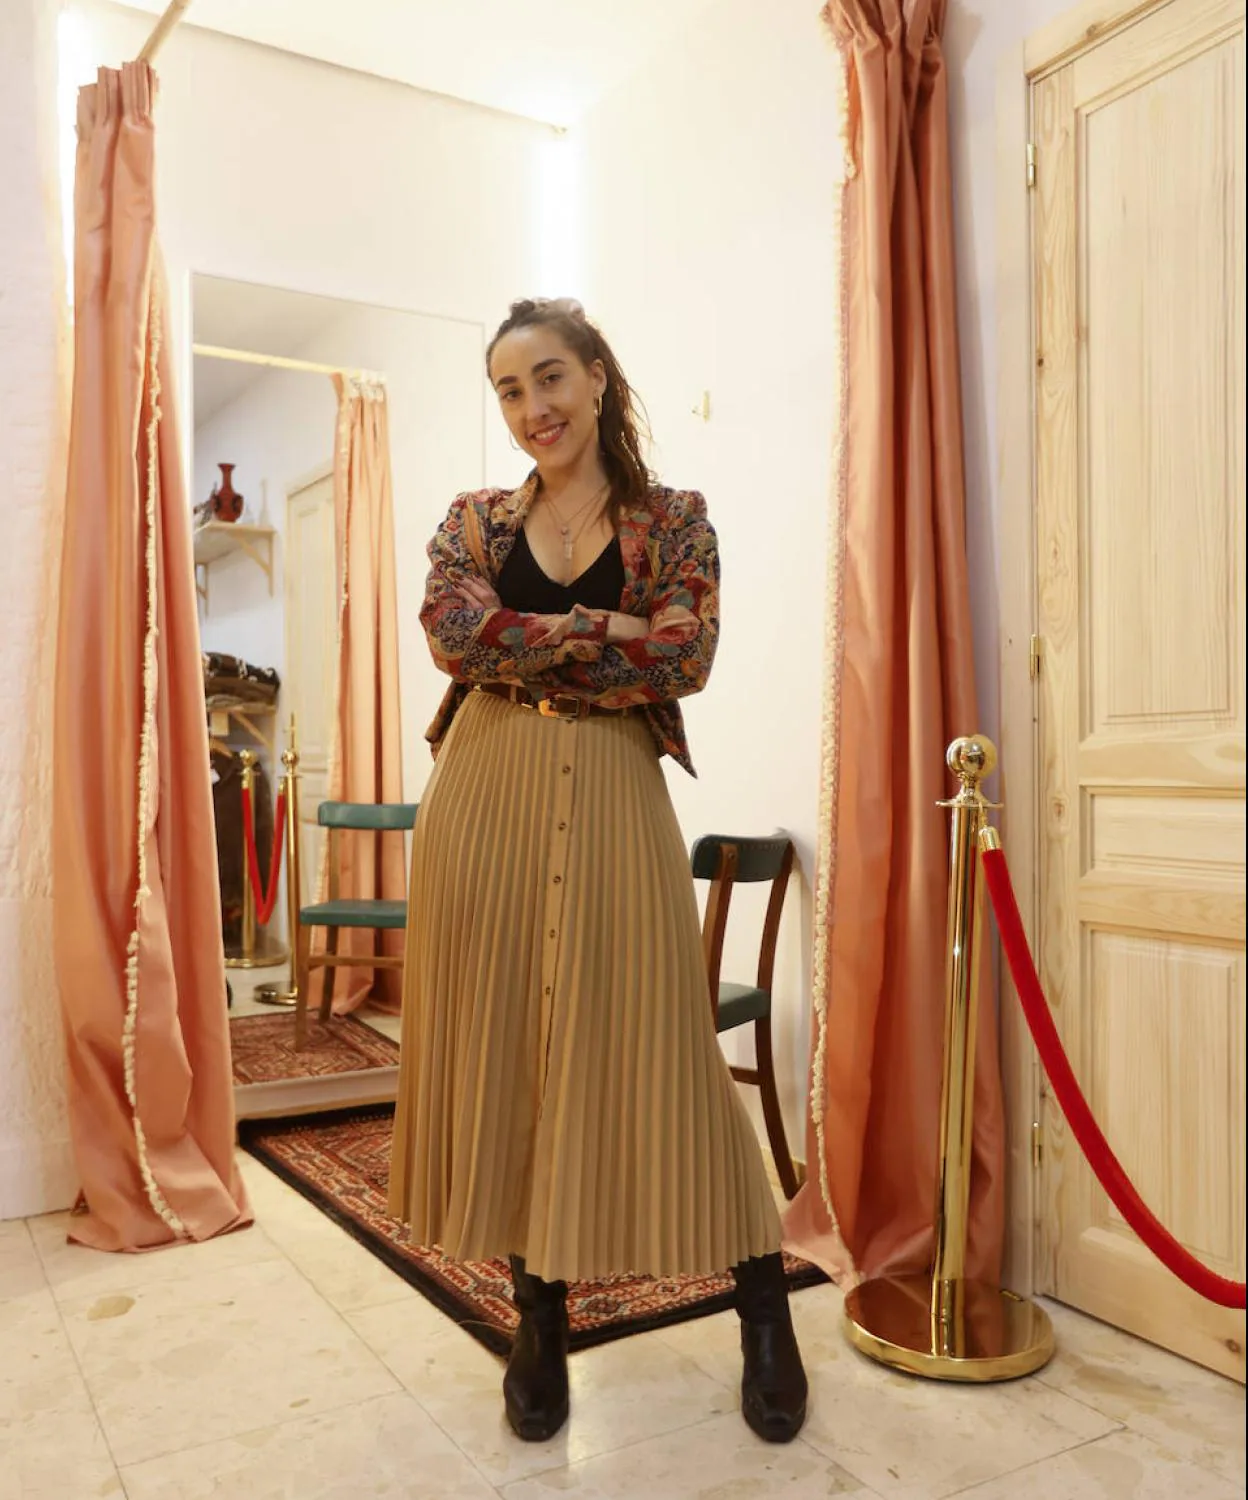 Tiendas en Bilbao (ropa 'vintage'): Mara, la joven creadora que abre su  segunda tienda de ropa 'vintage' en Bilbao | El Correo